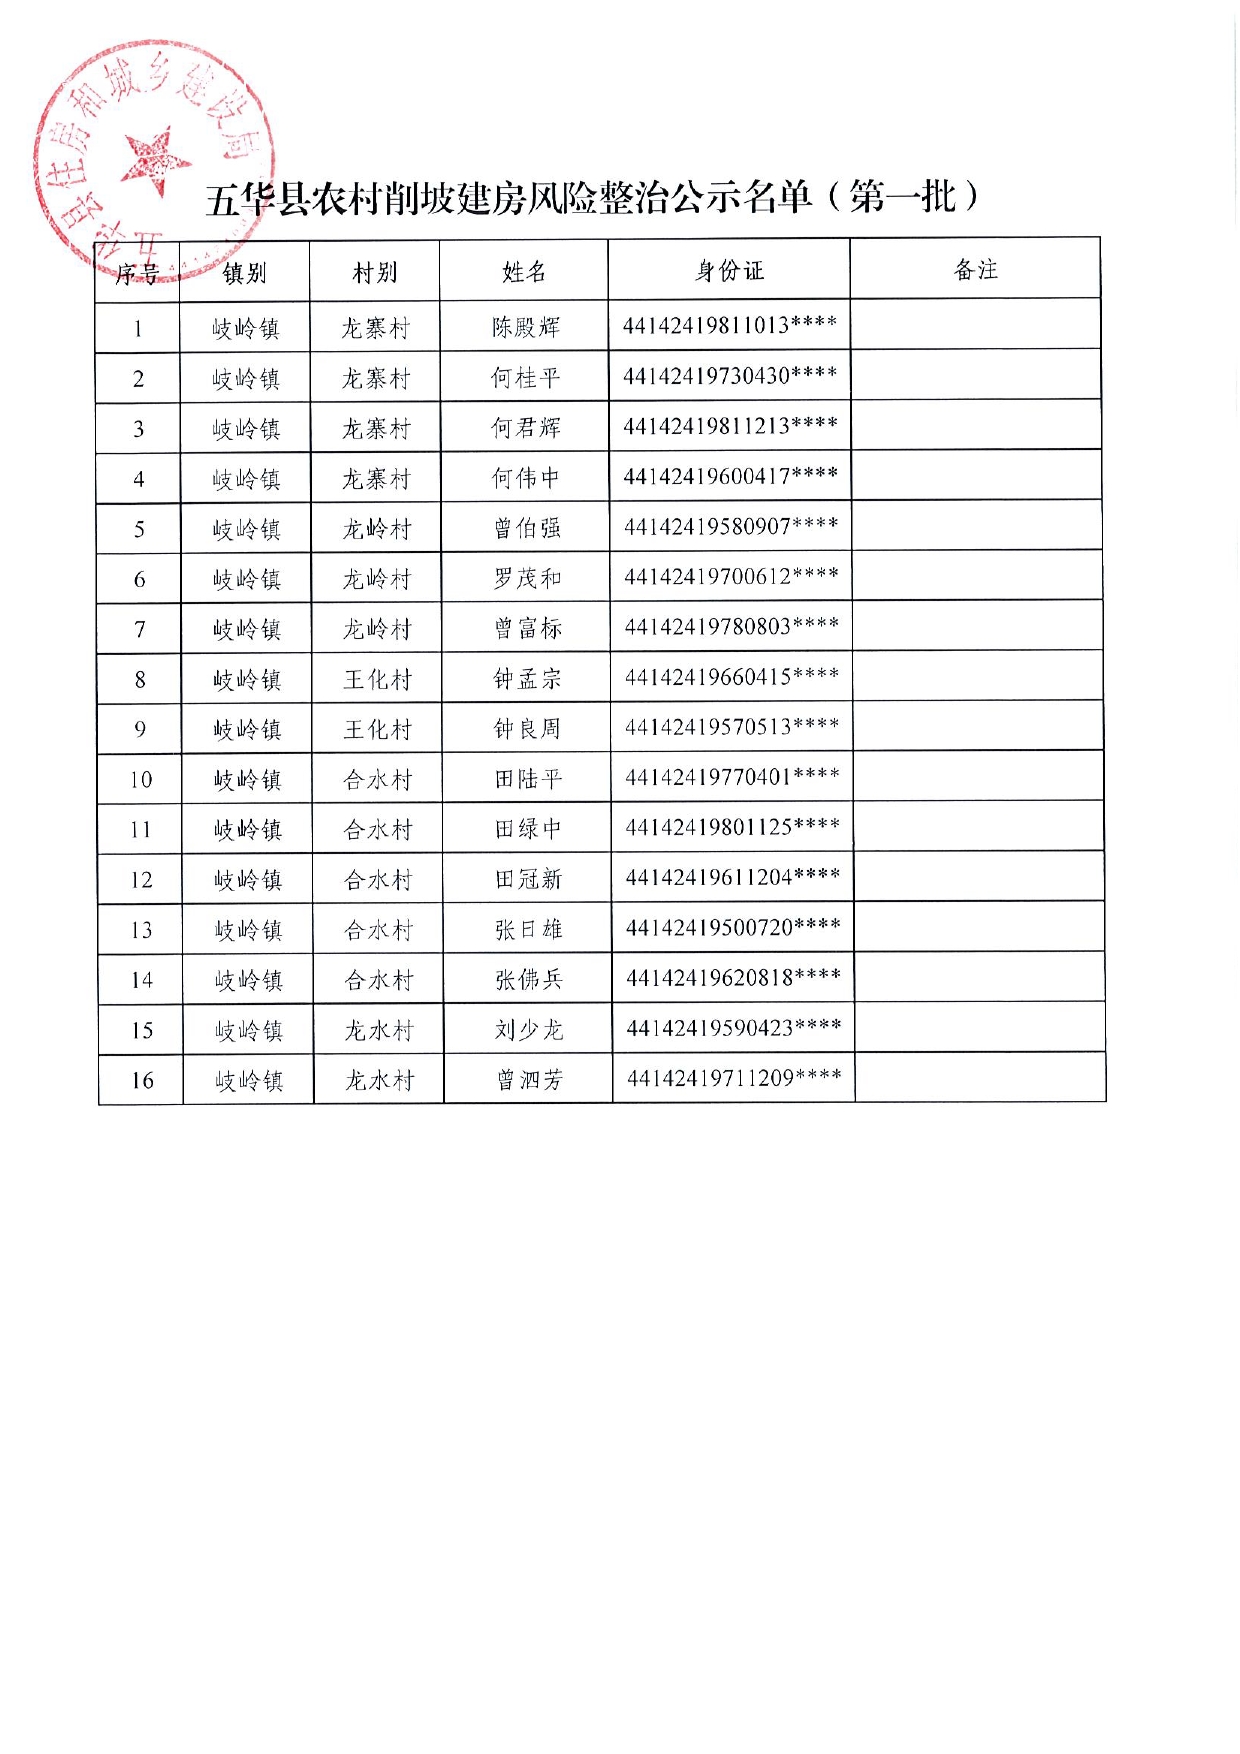 五华县农村削坡建房风险整治第一批补助对象名单公示0004.jpg